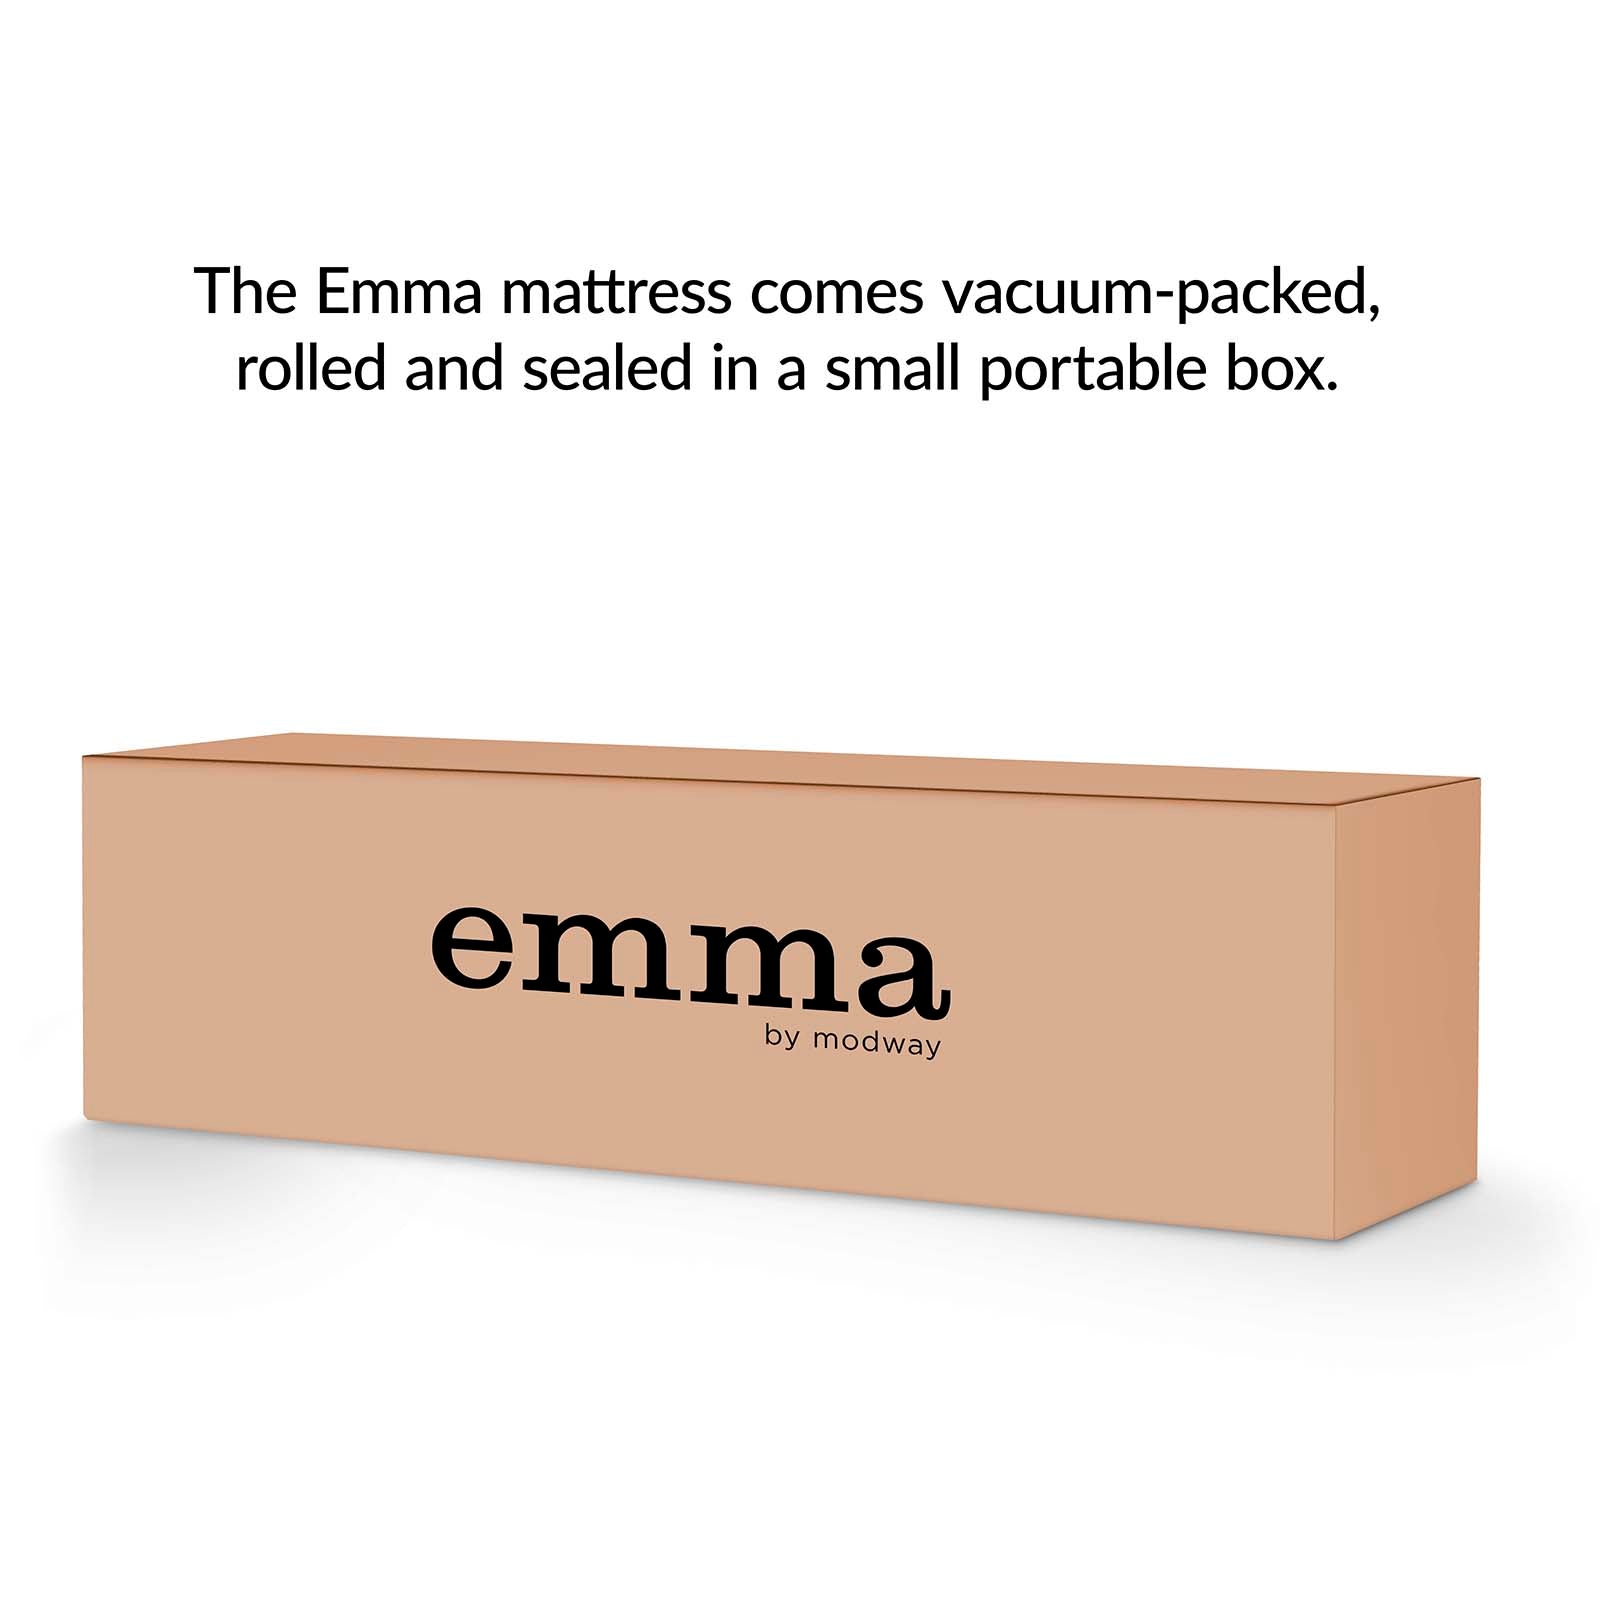 Modway Mattresses - Emma 6" Queen Mattress